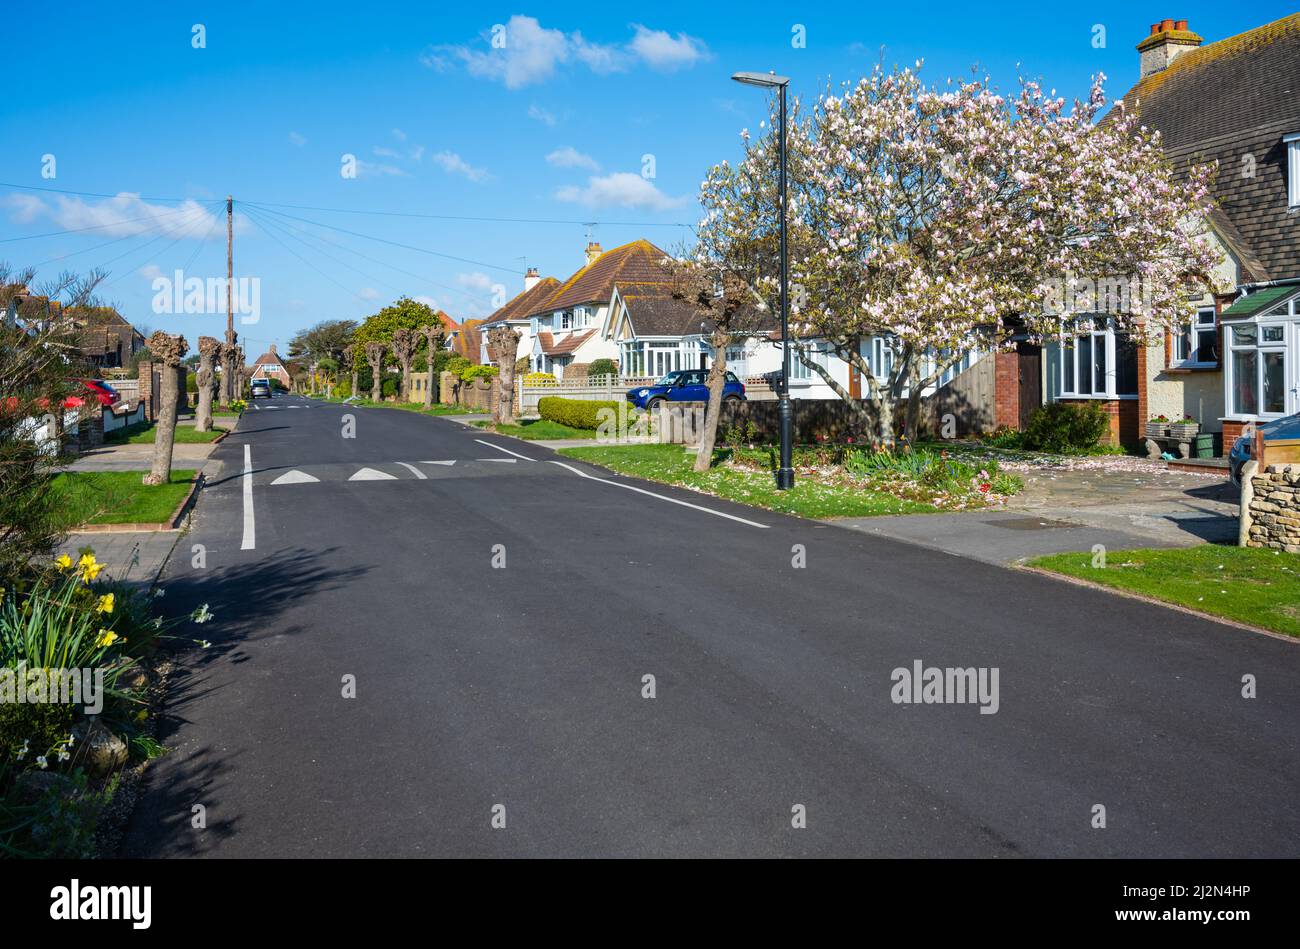 Route sans trottoirs ni pavage avec arbres pollés et arbres avec fleurs et circulation calme ralentisse dans une route résidentielle tranquille à West Sussex, Royaume-Uni Banque D'Images